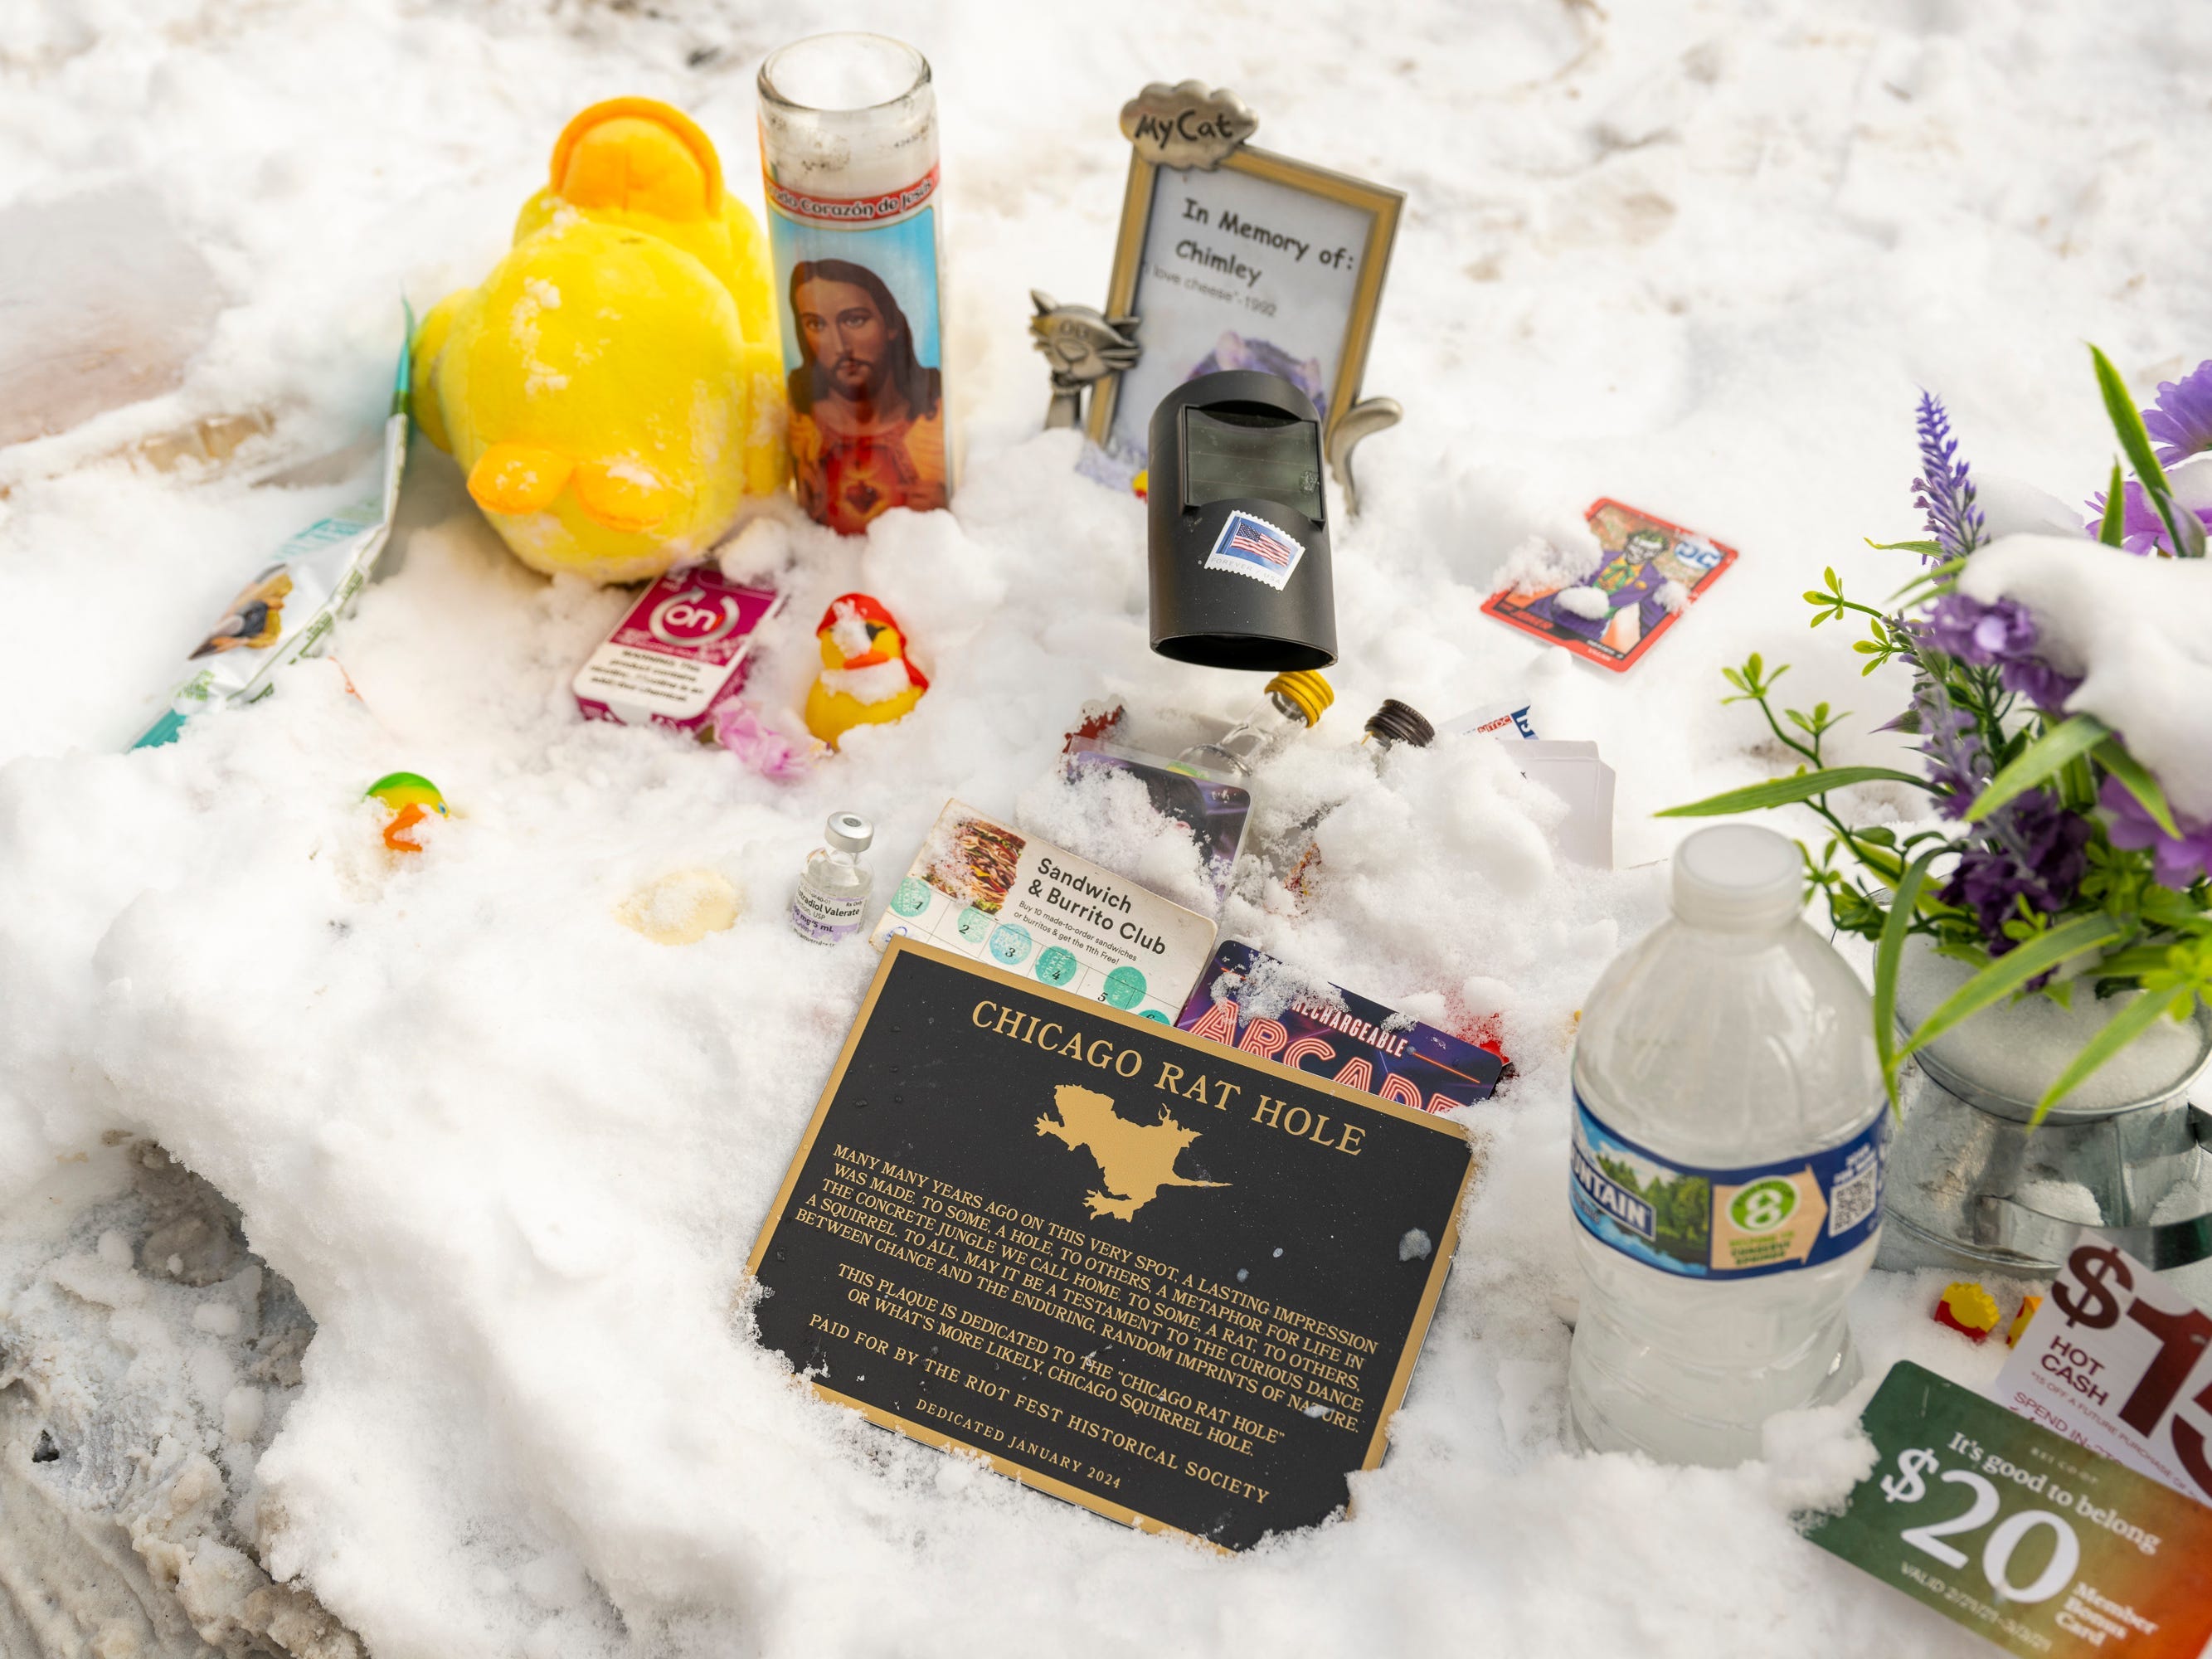 Tribute hinterlassen im Schnee in der Nähe des „Rattenlochs“ von Chicago.